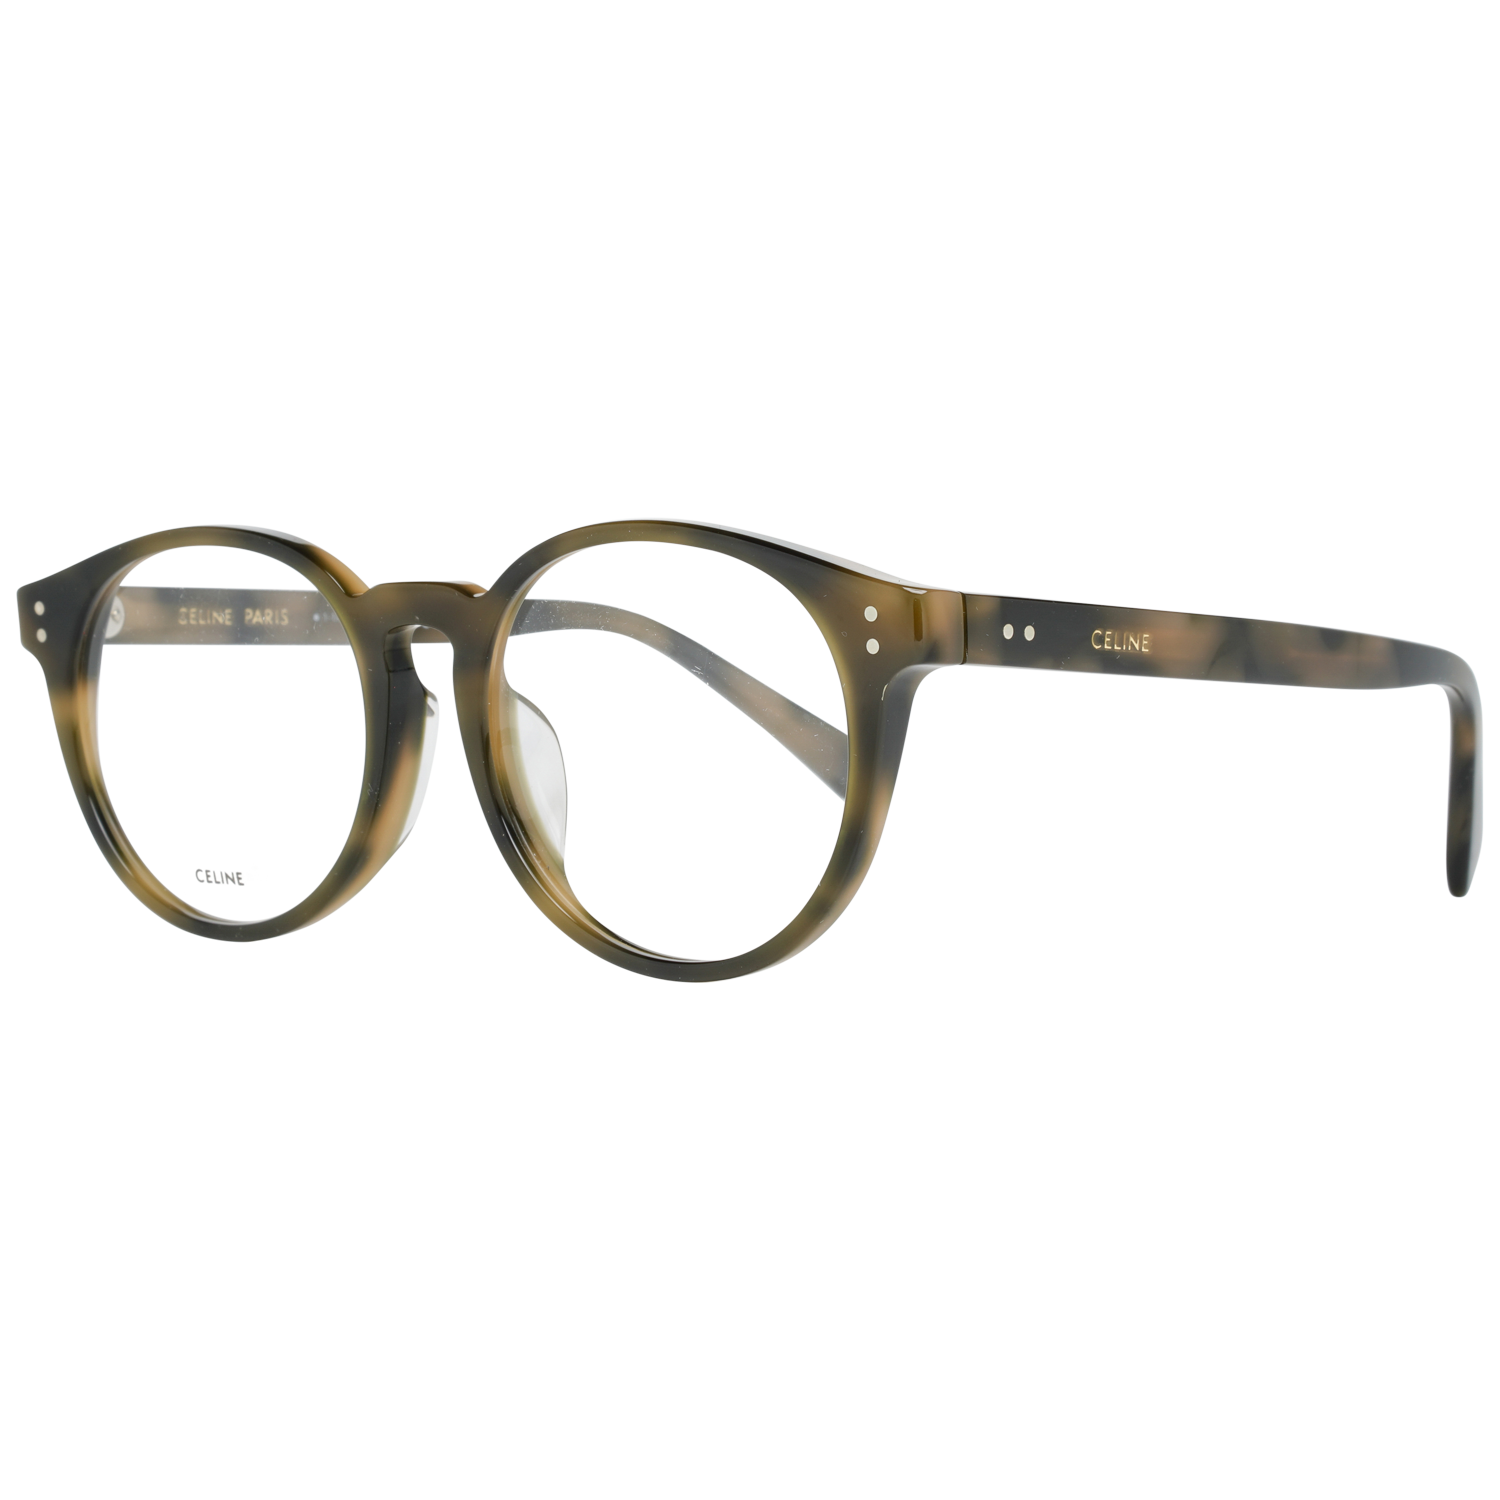 Celine Eyeglasses Celine Women's Optical Frame Prescription Round Multicolour tortoiseshell Glasses CL50031F 056 Eyeglasses Eyewear UK USA Australia 